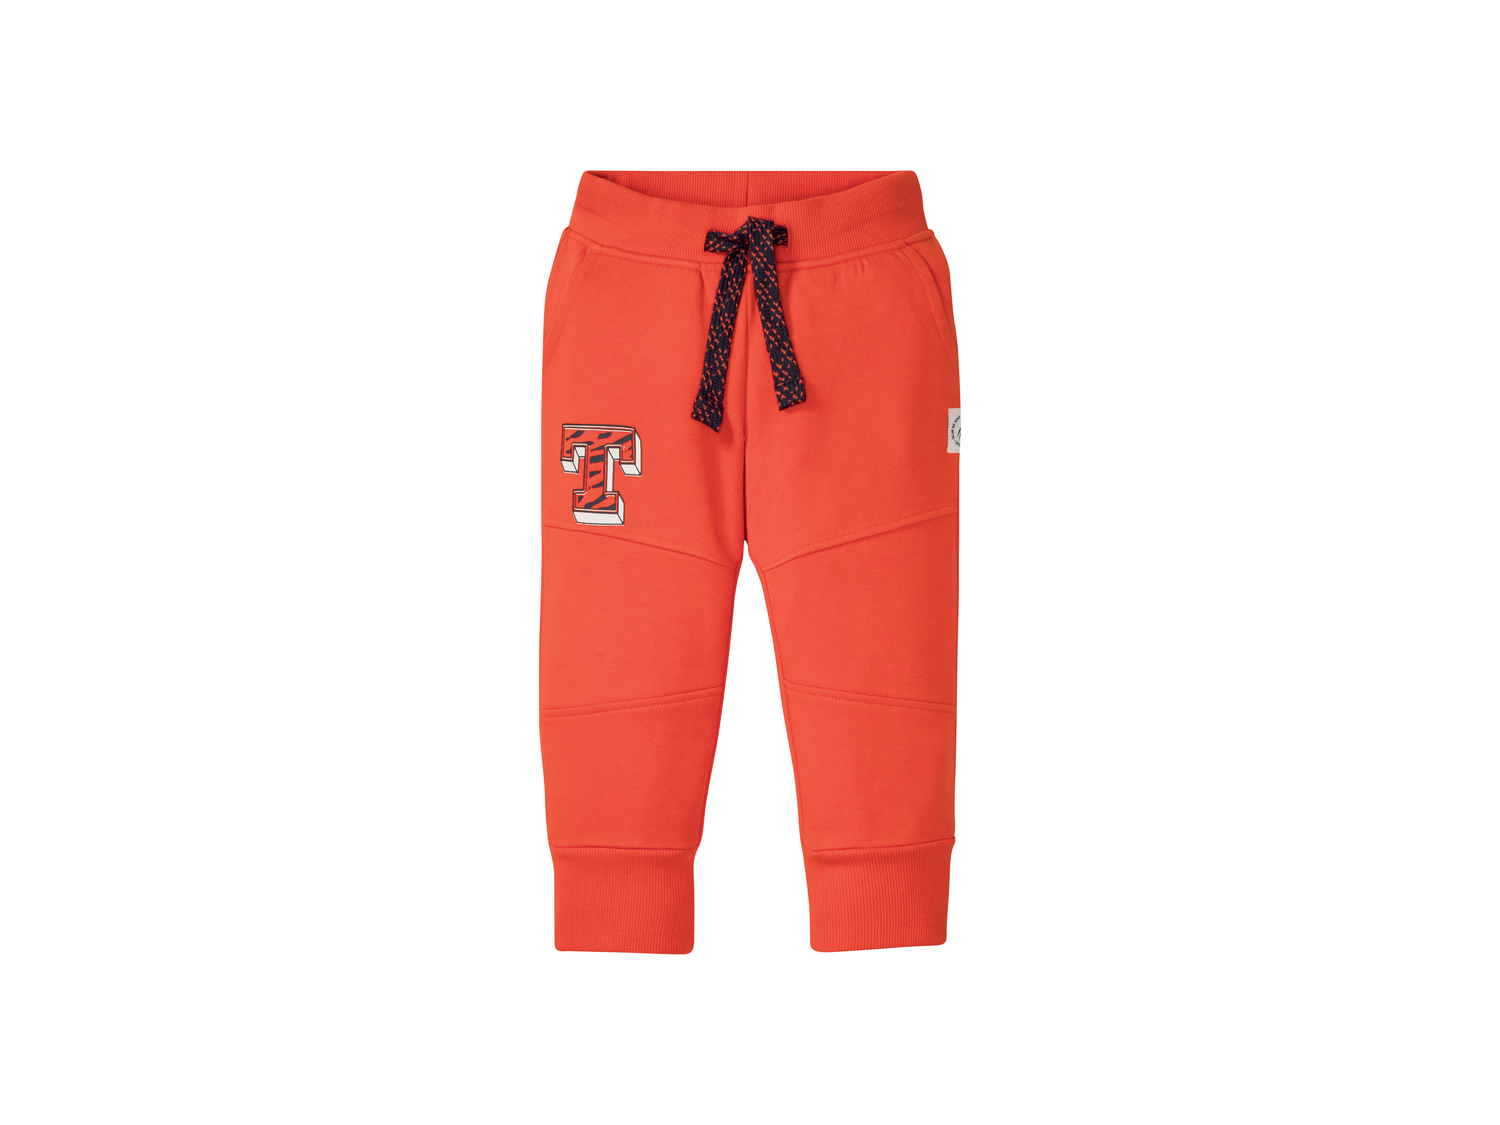 Pantaloni sportivi da bambino Lupilu, prezzo 4.99 &#8364; 
Misure: 1-6 anni ...